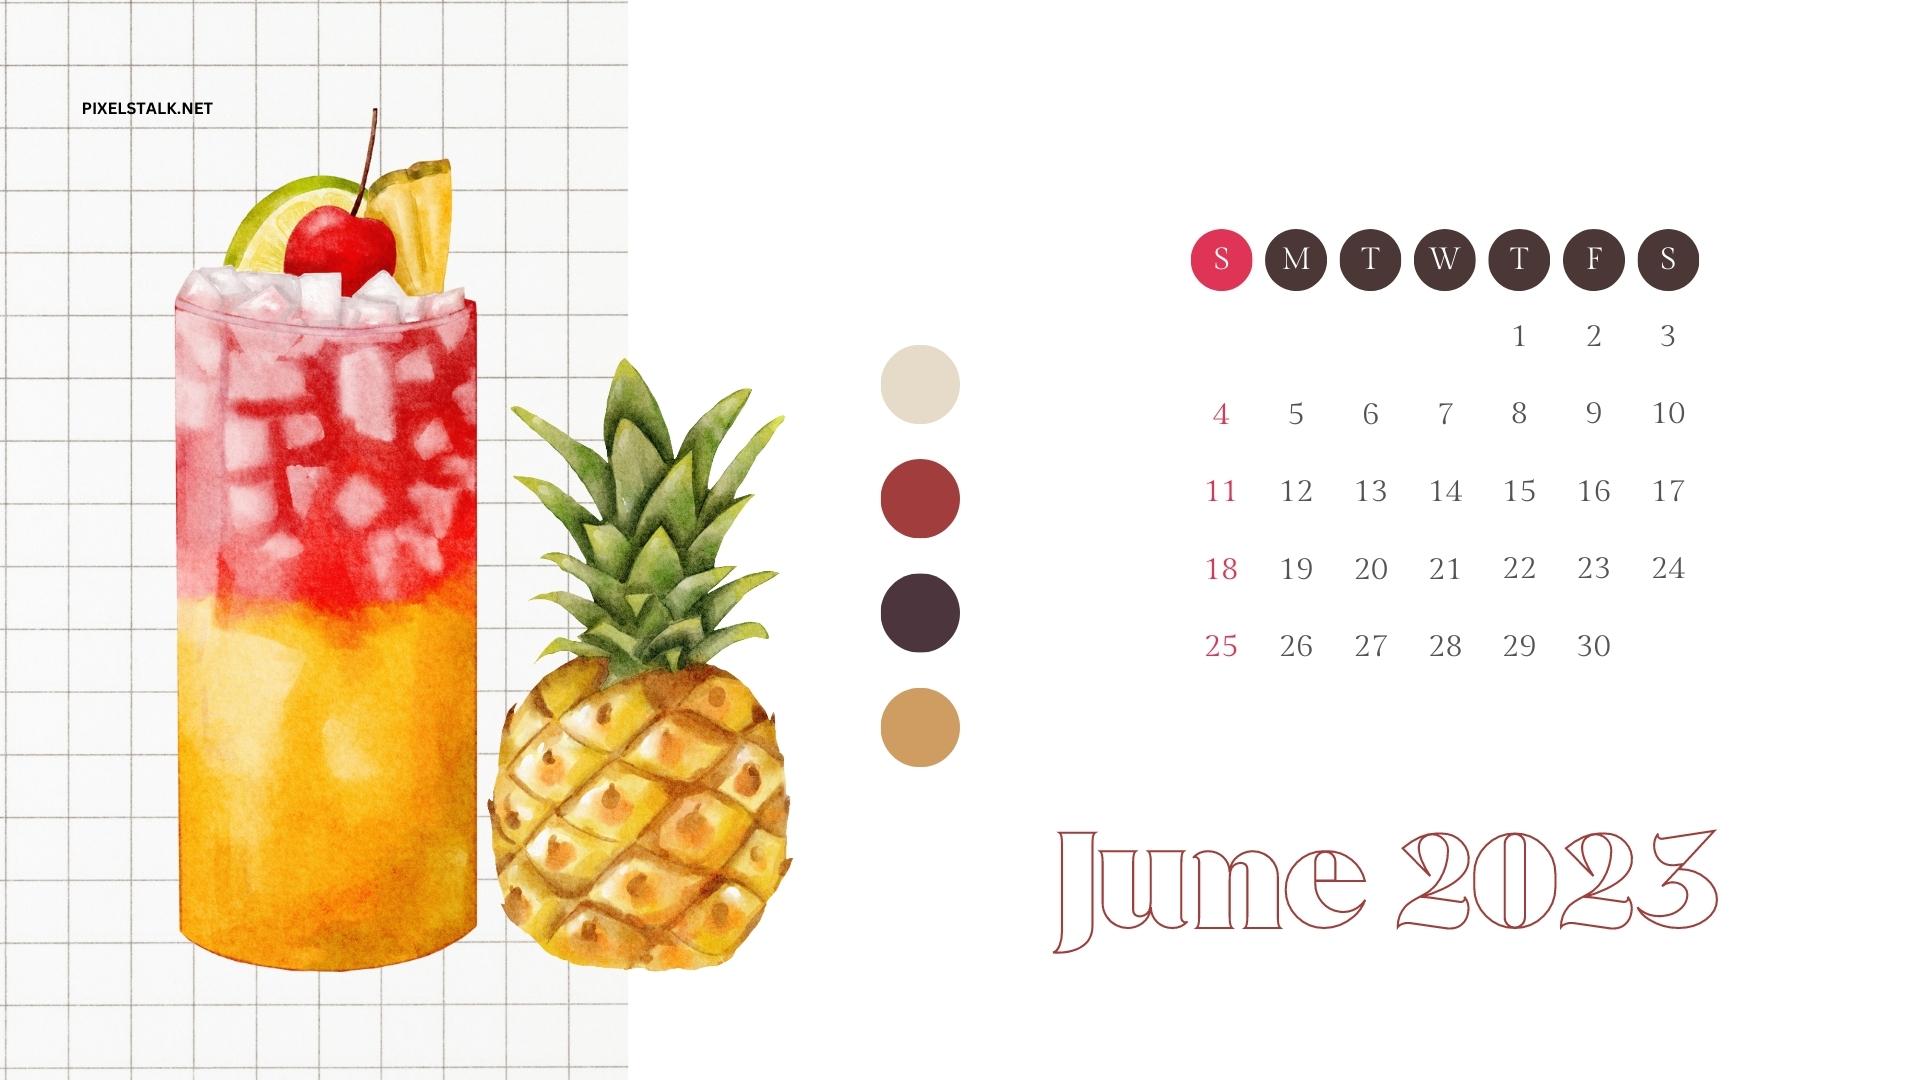 June 2023 Calendar Desktop Wallpapers